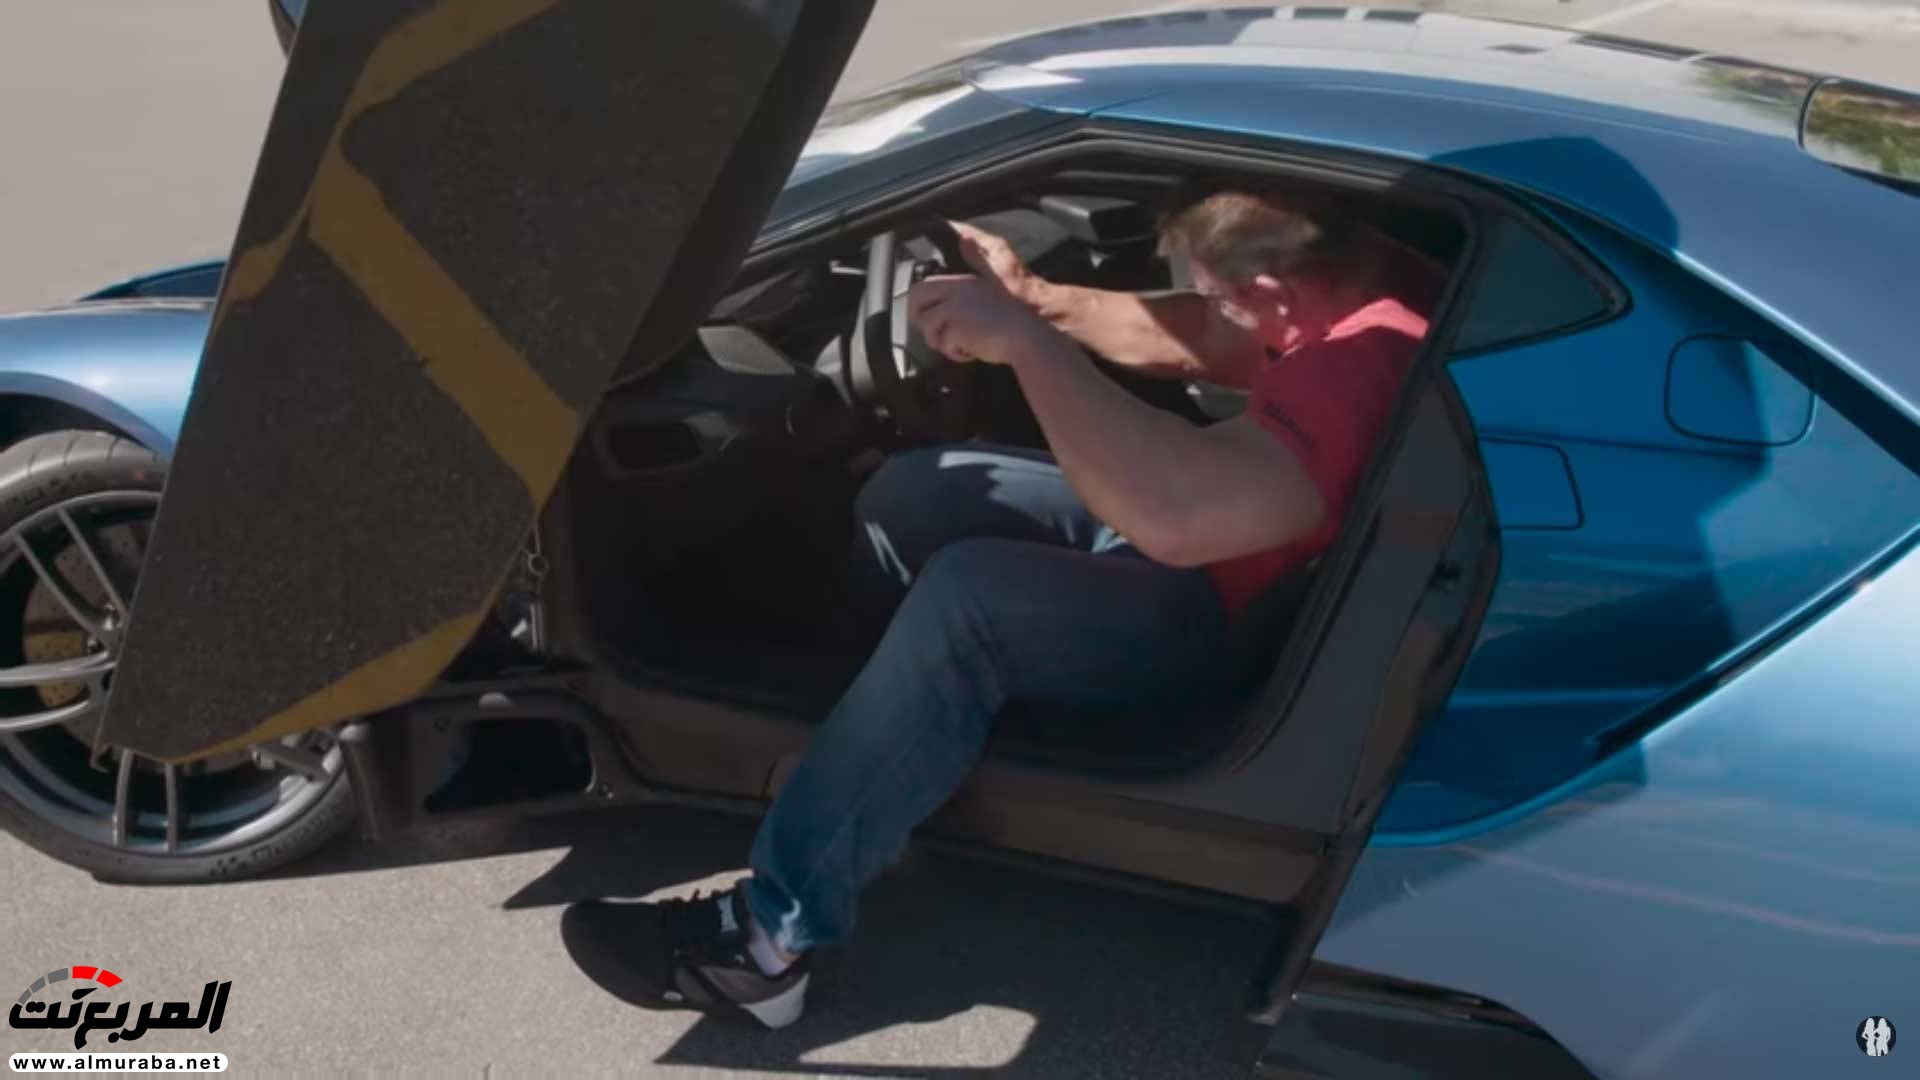 جون سينا يستعرض فورد GT 2017 "فيديو وصور" 25